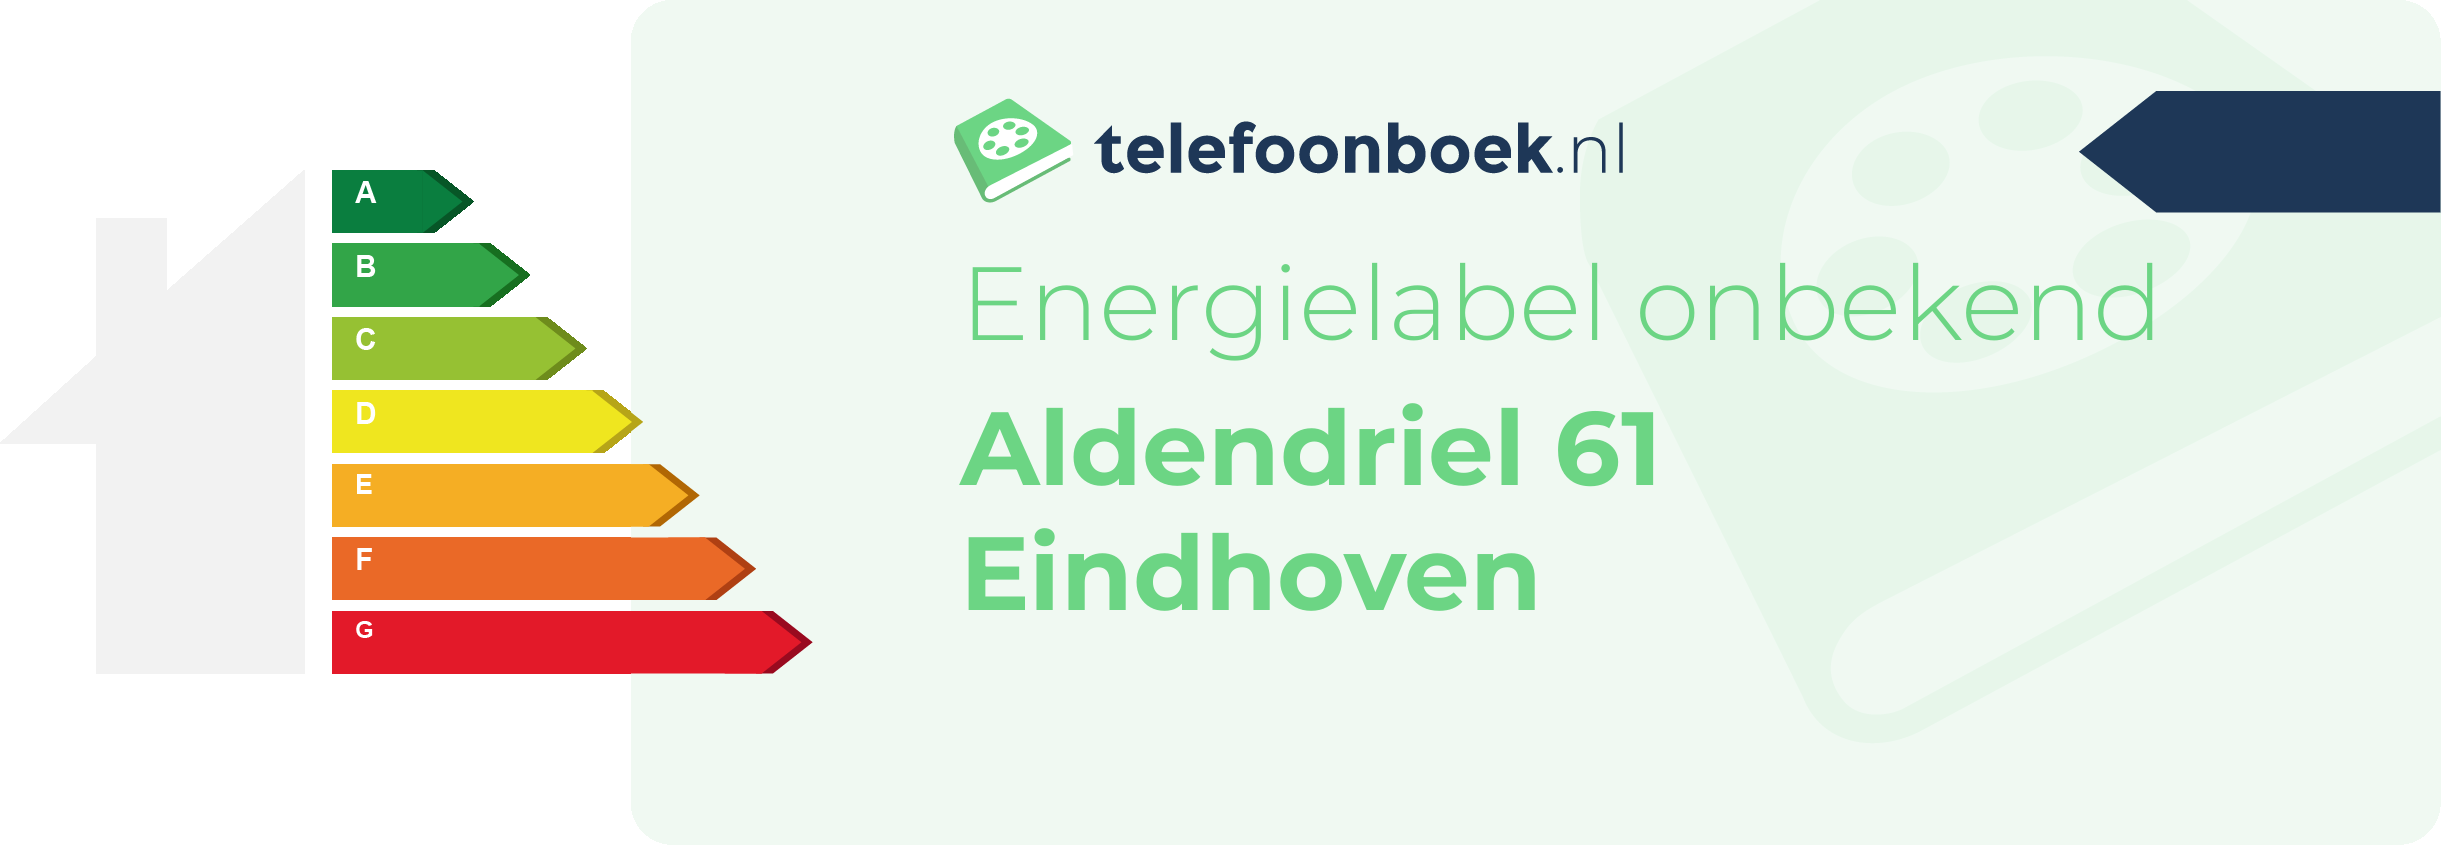 Energielabel Aldendriel 61 Eindhoven